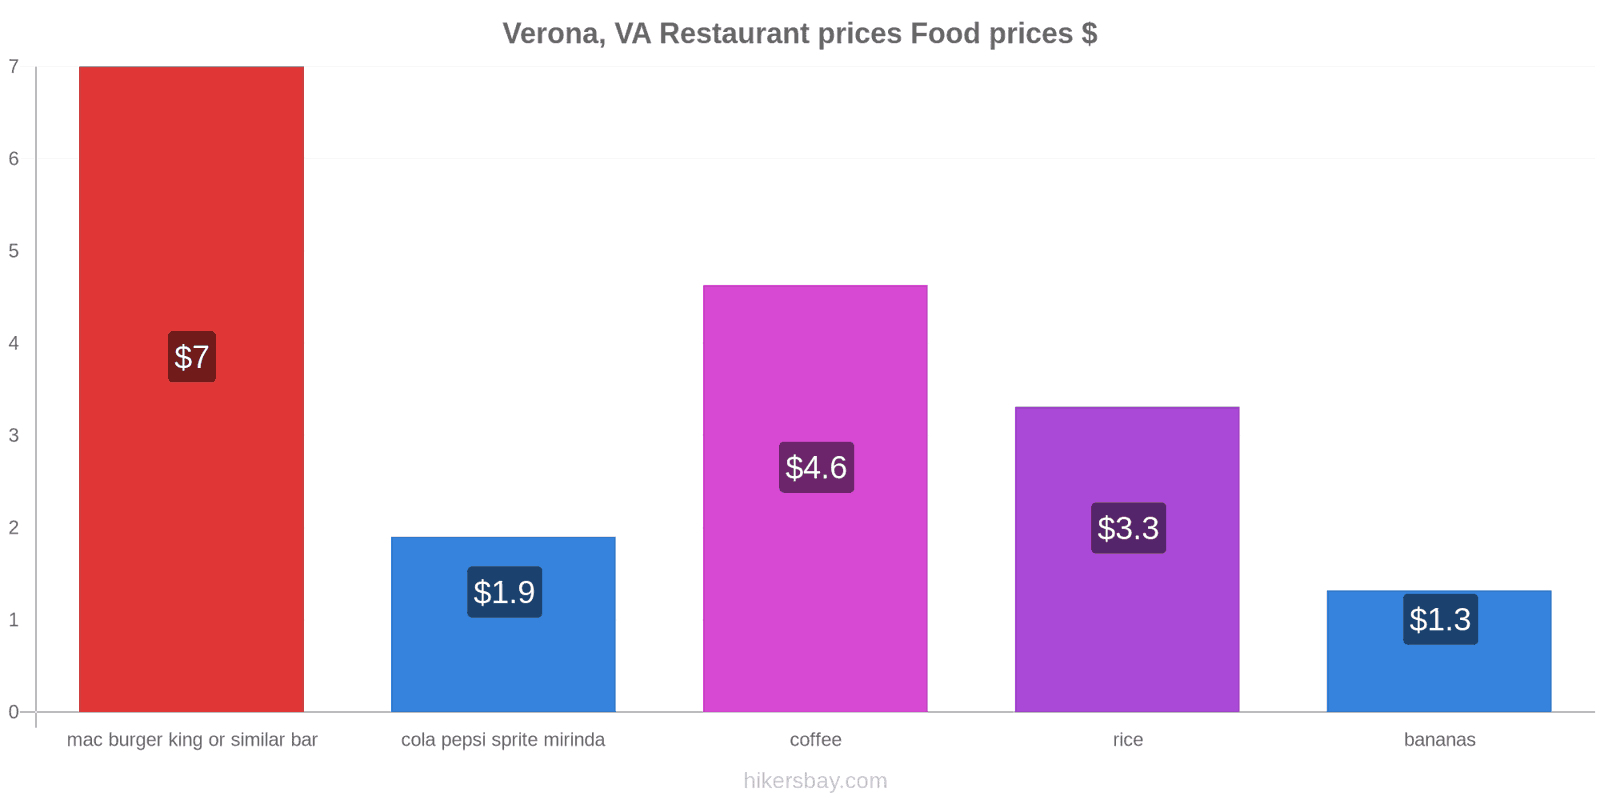 Verona, VA price changes hikersbay.com